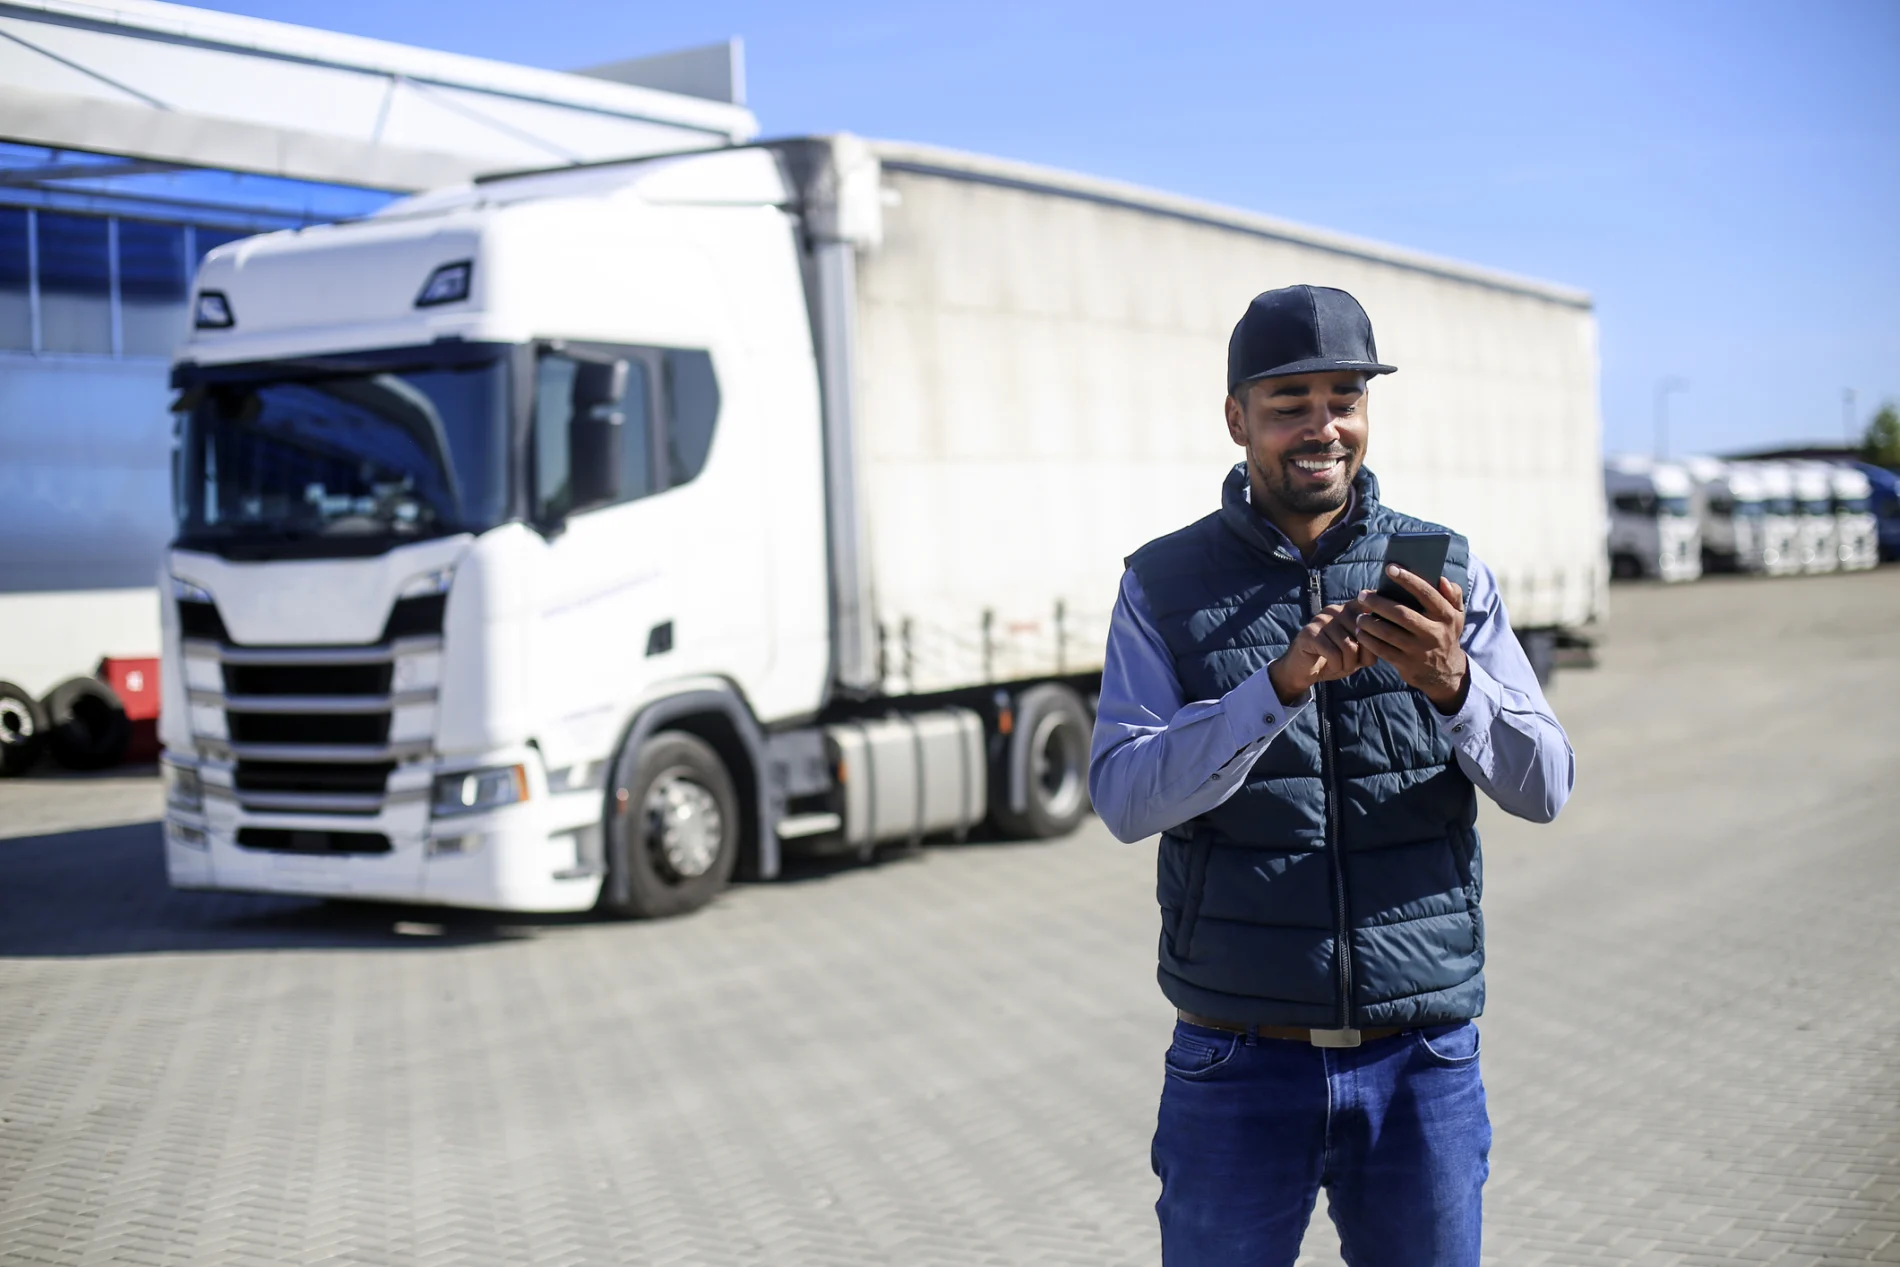 Homme, souriant, debout devant d’un camion, utilisant un appareil mobile